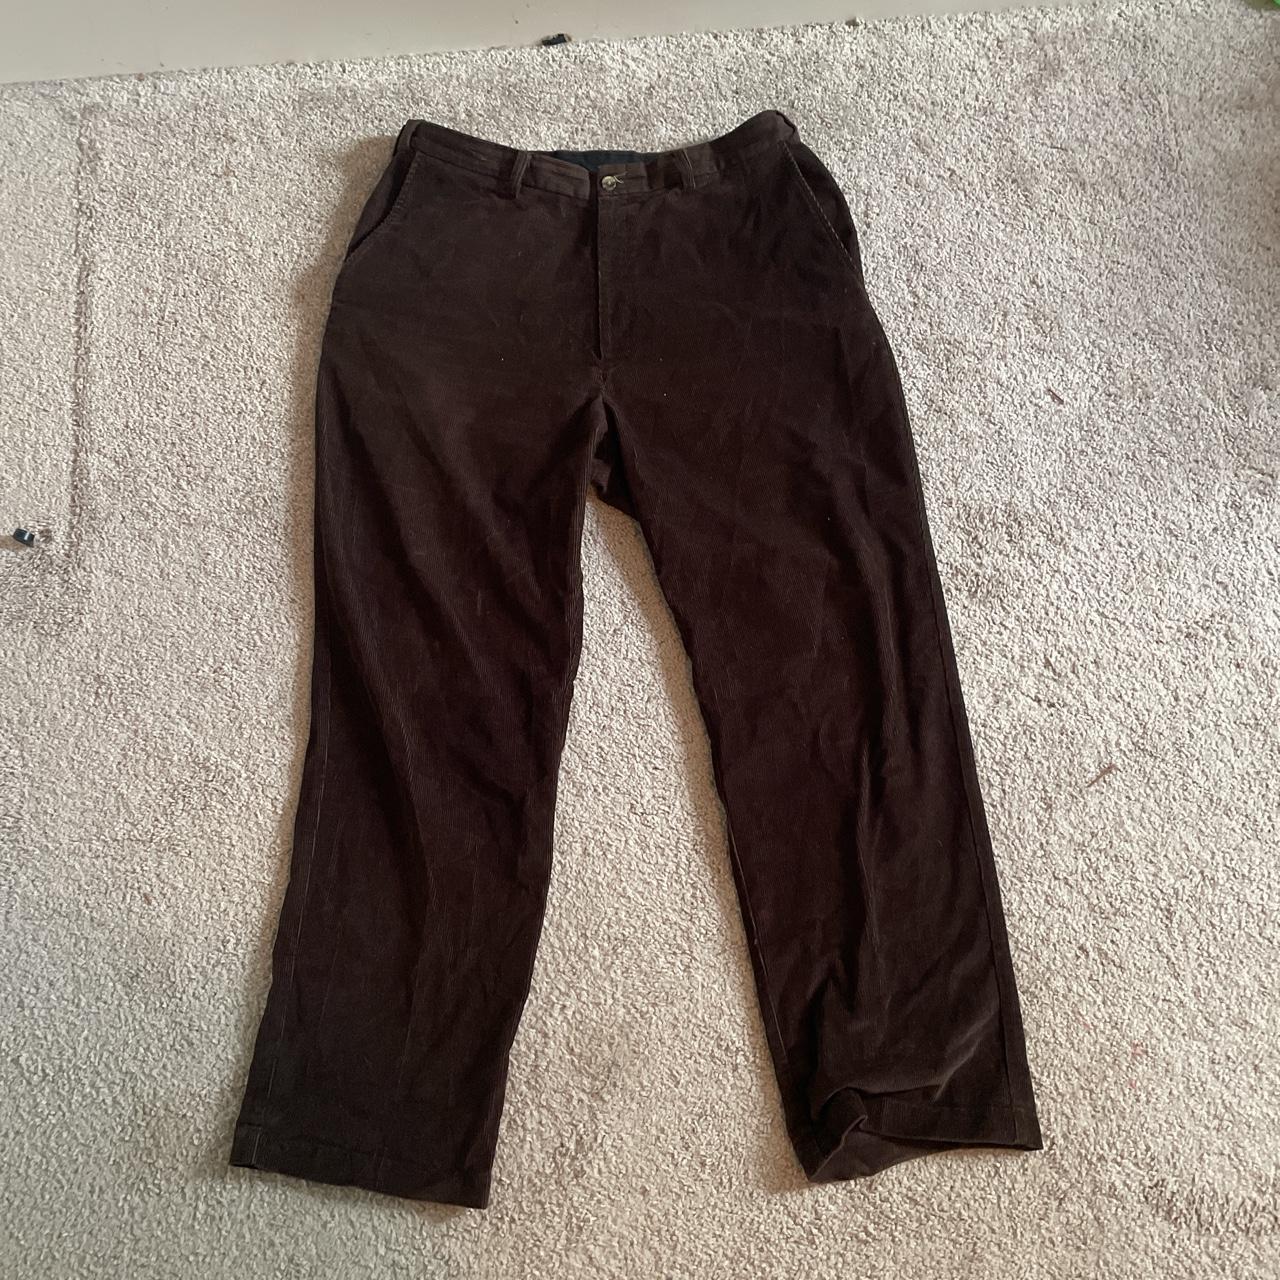 dark brown corduroy pants - Depop